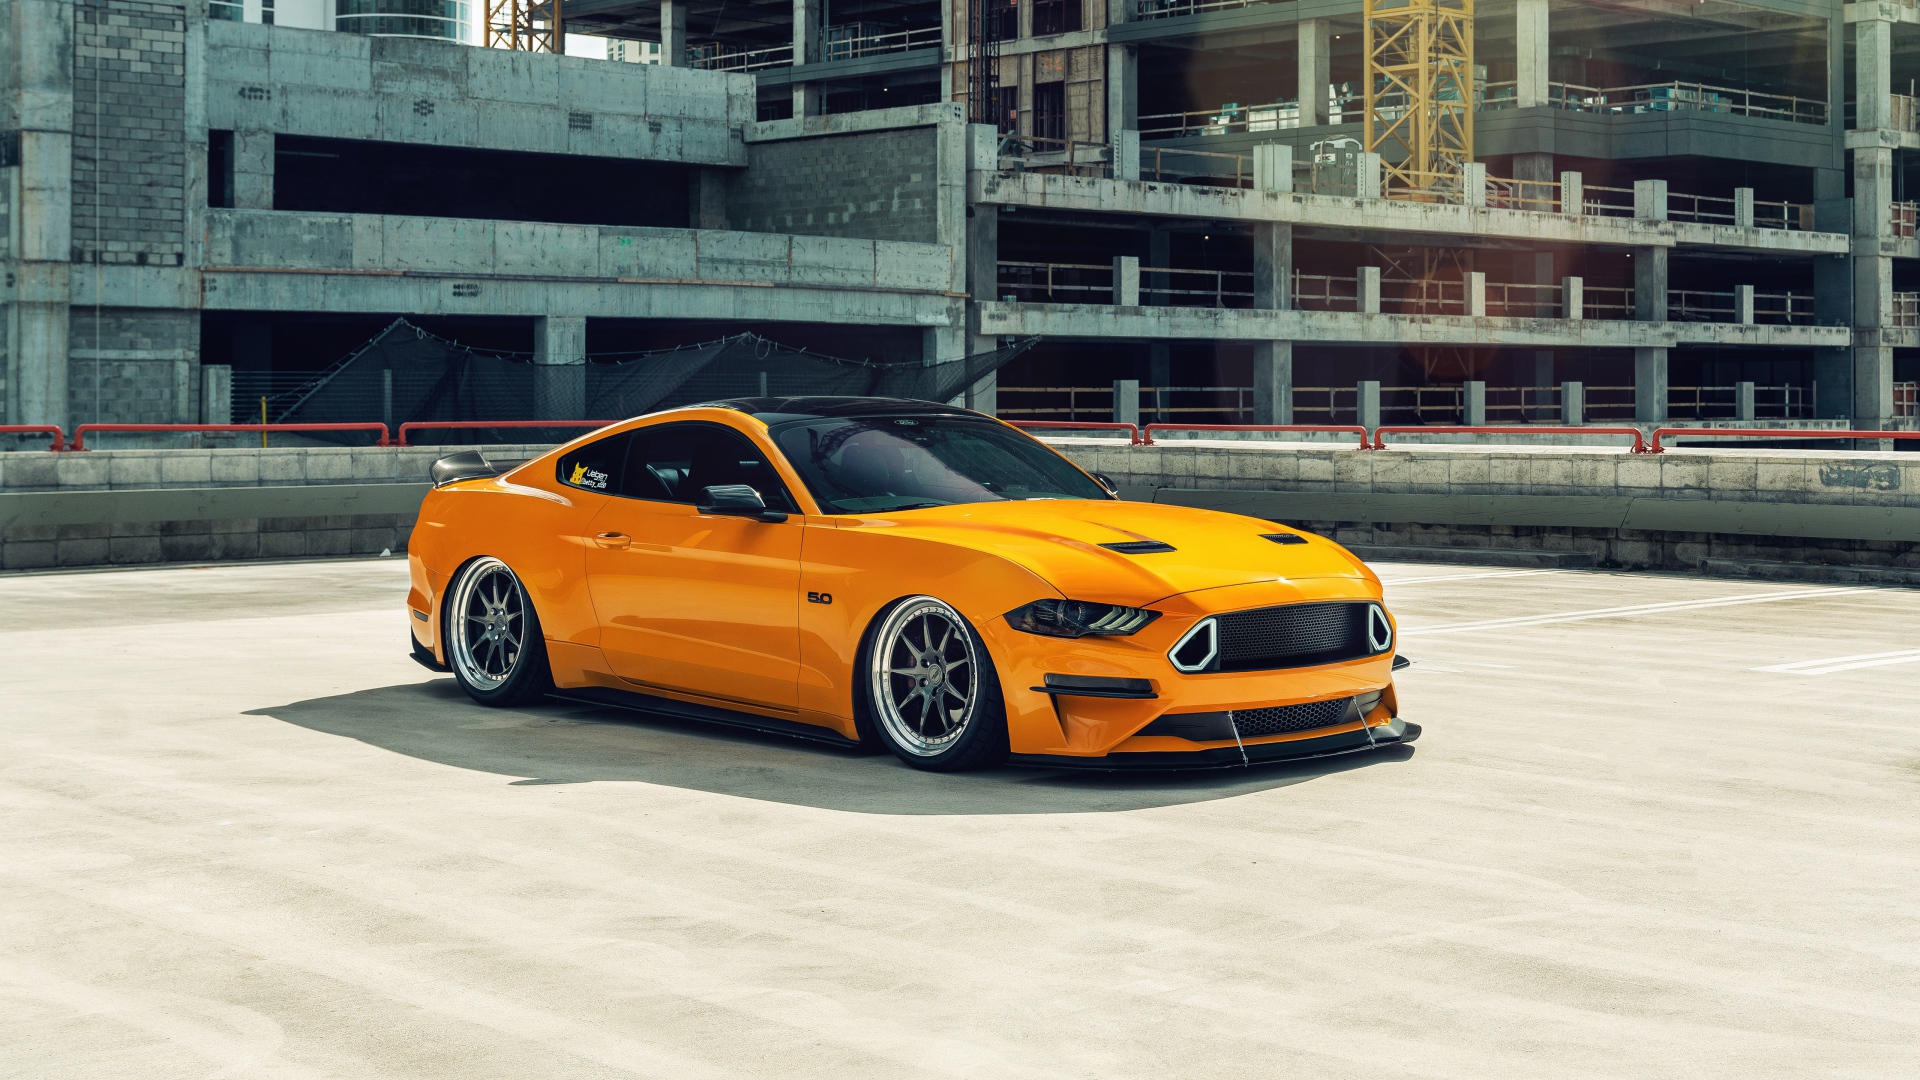 Оранжевый автомобиль Mustang у заброшенного здания 